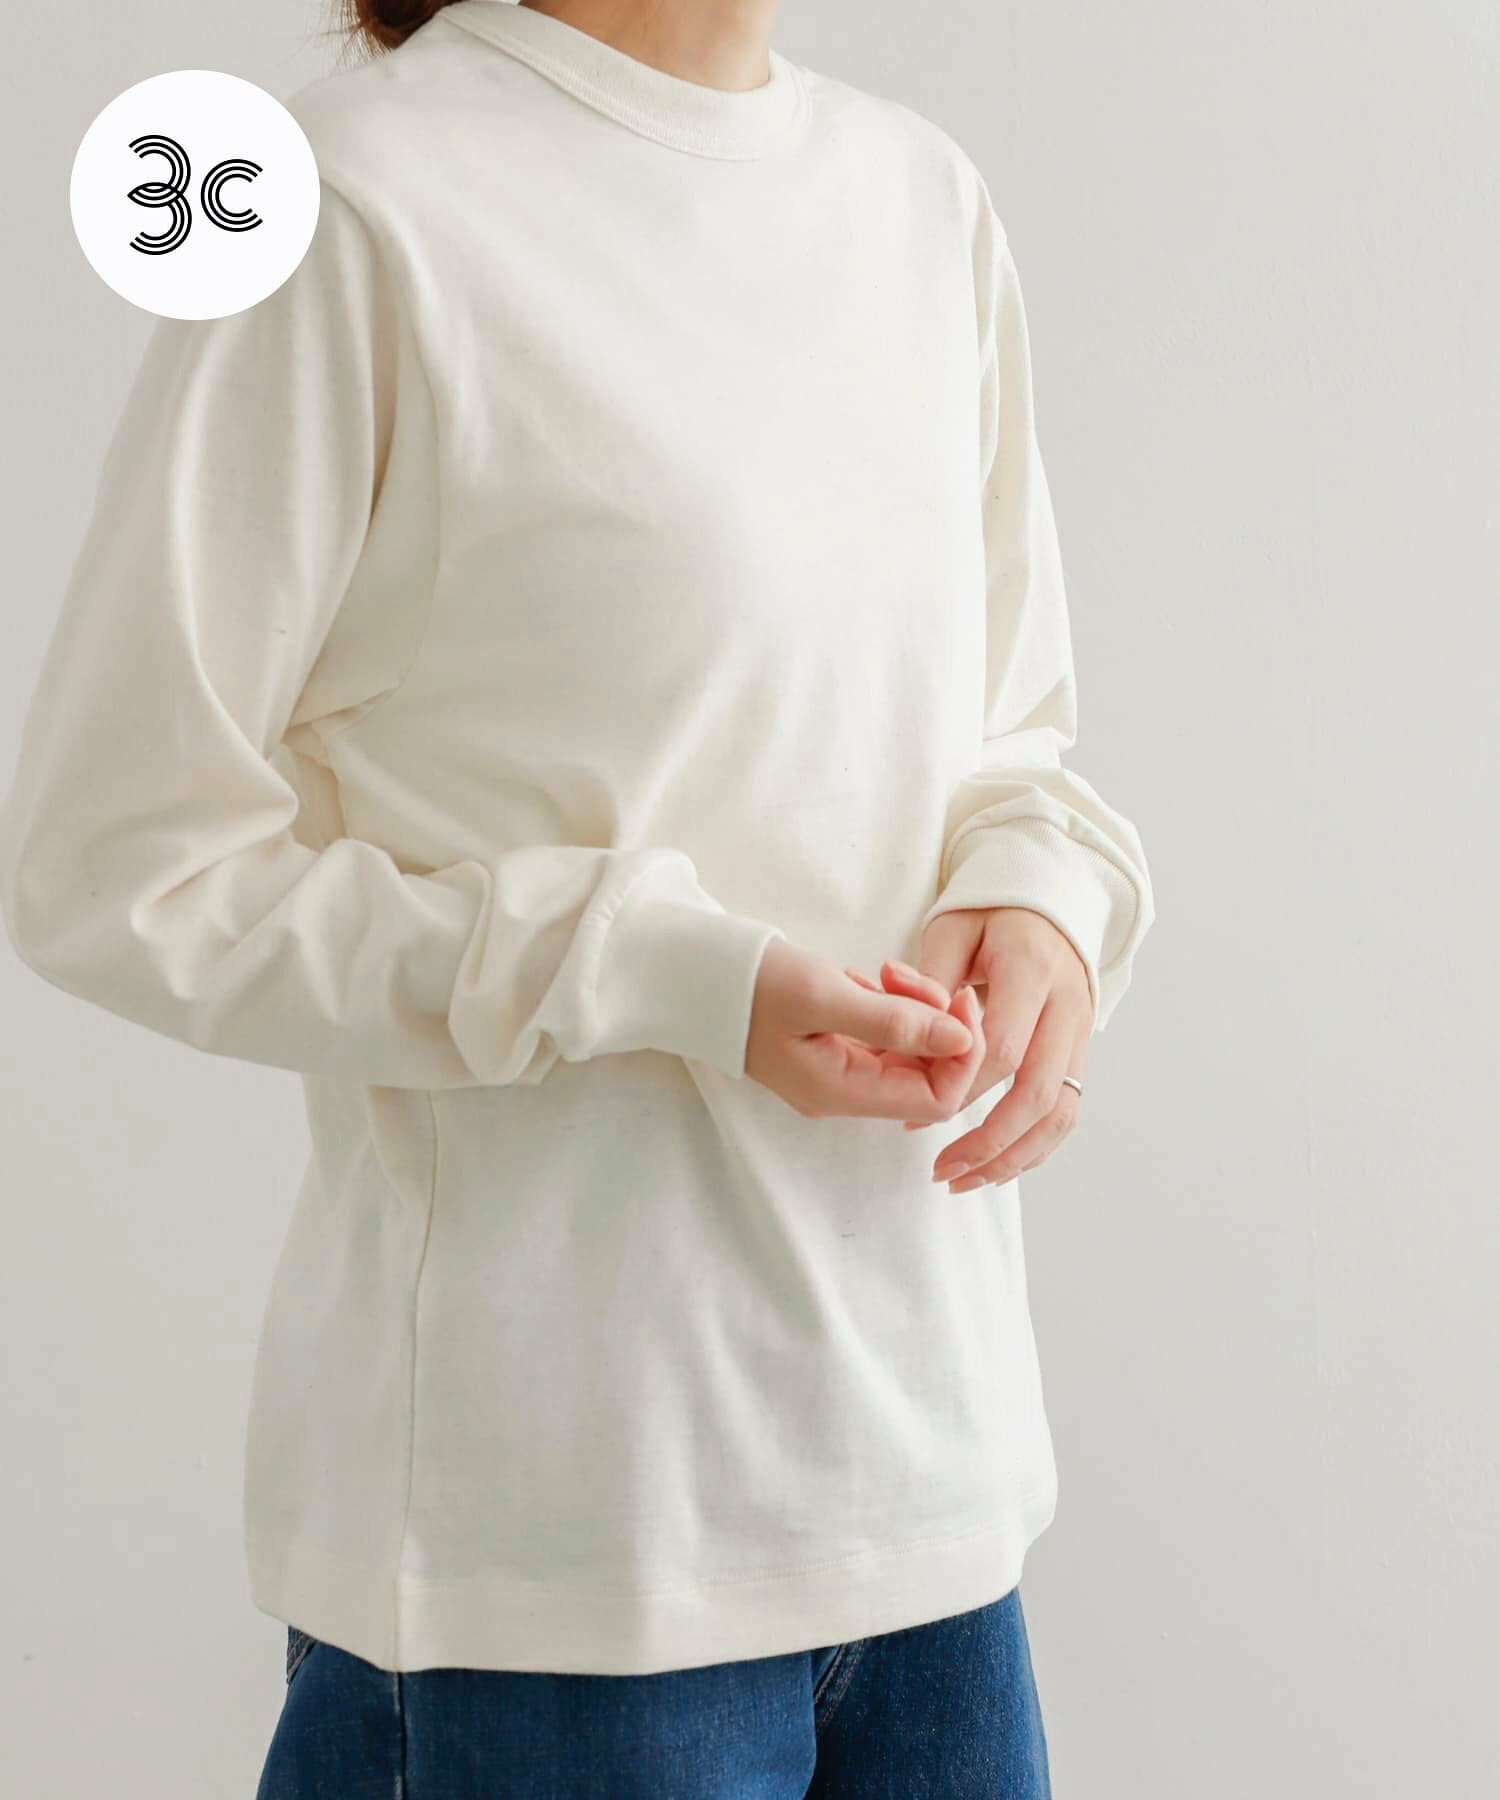 『ユニセックス』『6サイズ展開』commpost リサイクルコットンロングスリーブTシャツ